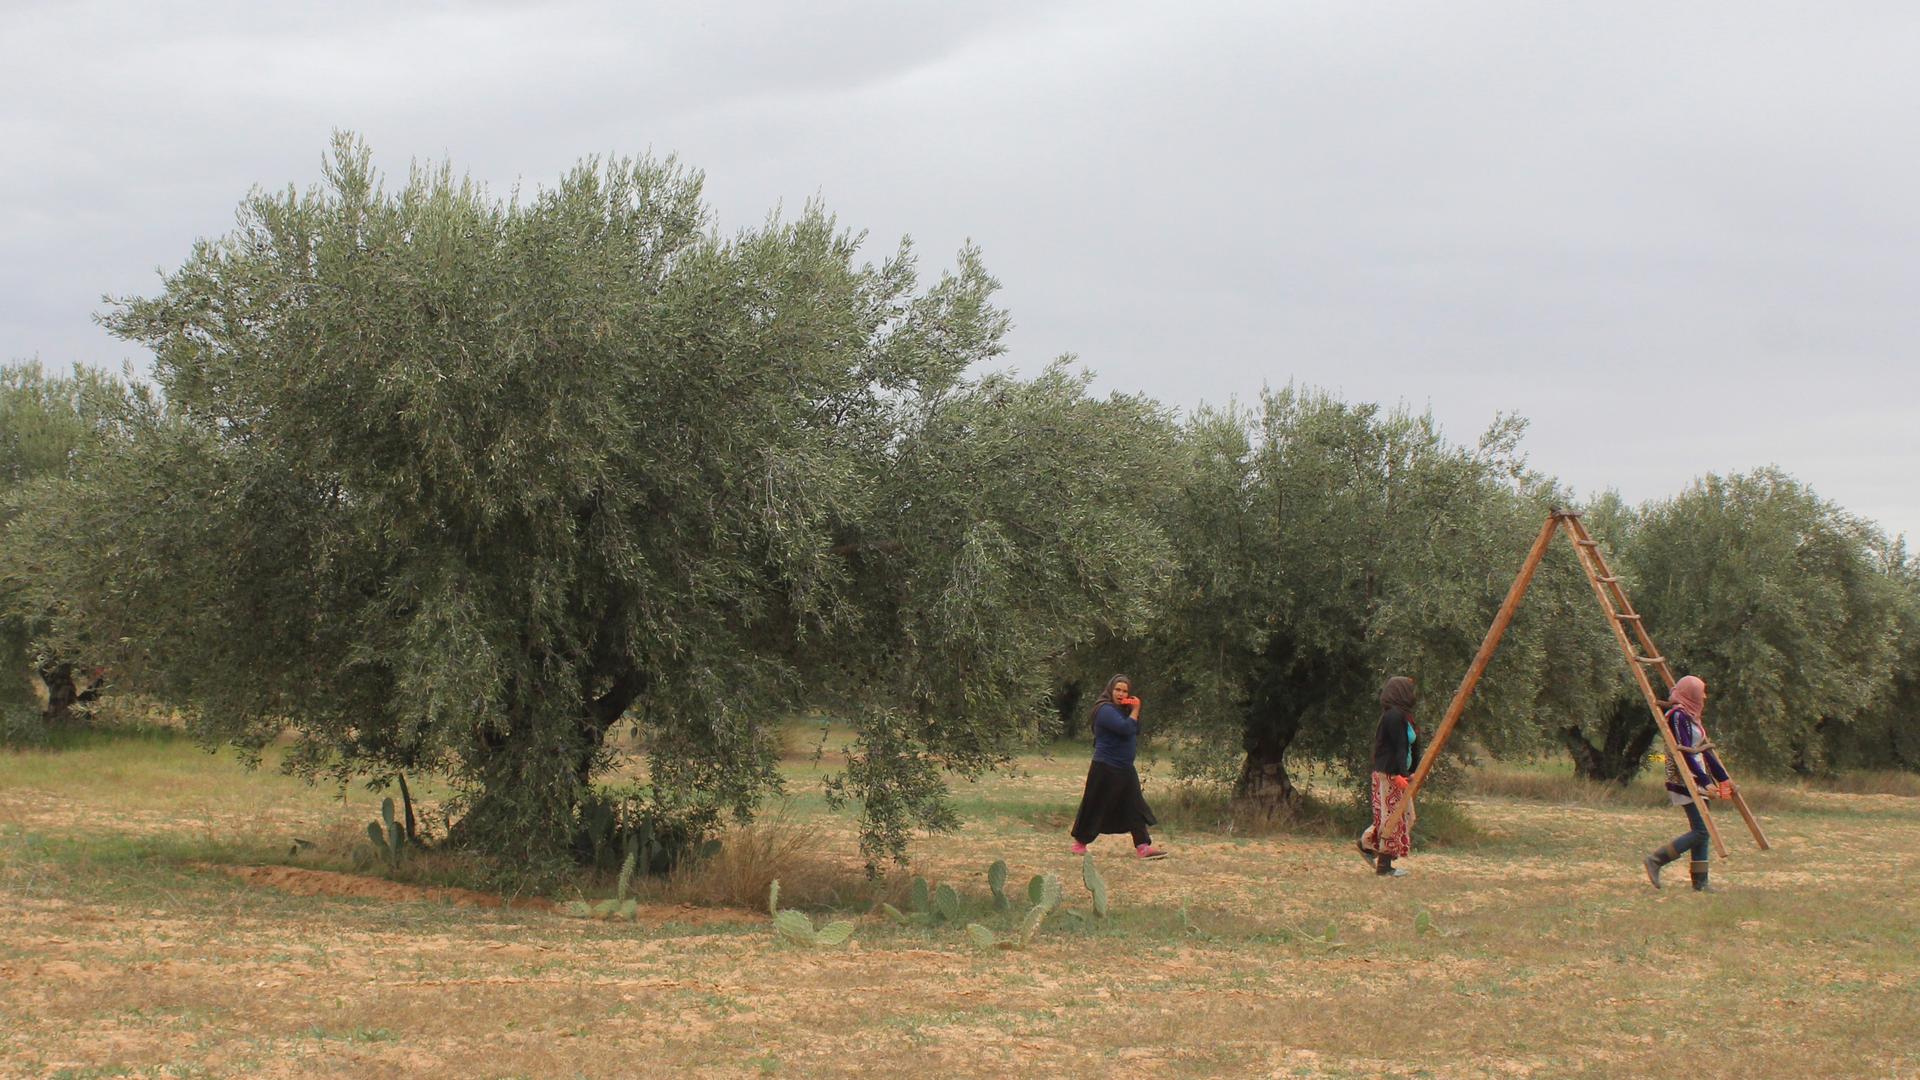 Olive harvest underway